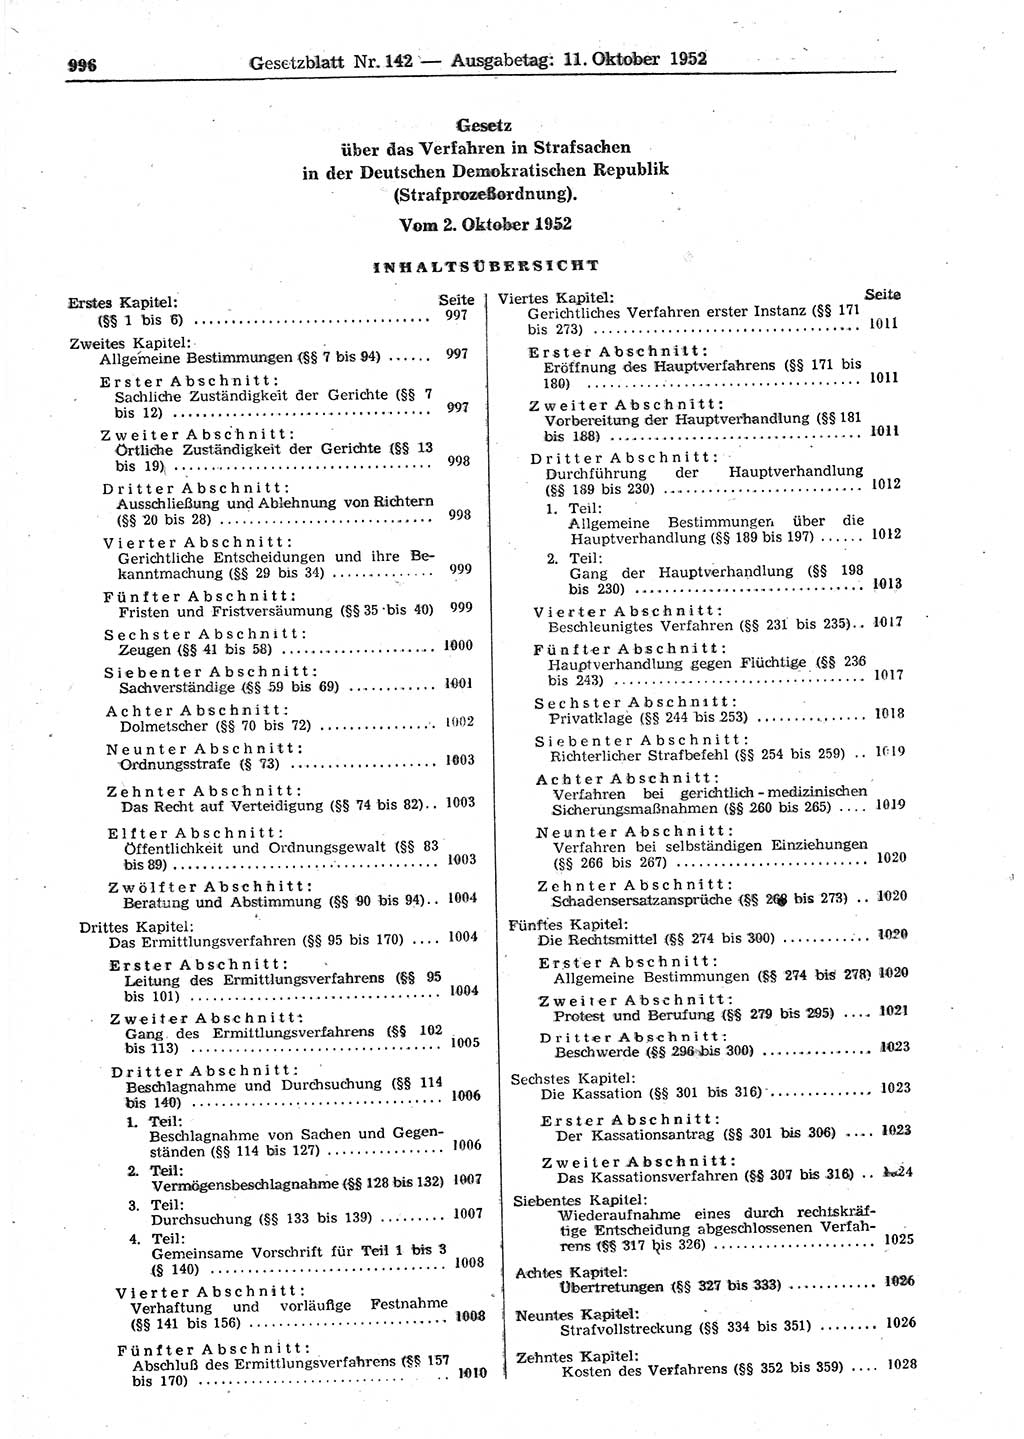 Gesetzblatt (GBl.) der Deutschen Demokratischen Republik (DDR) 1952, Seite 996 (GBl. DDR 1952, S. 996)